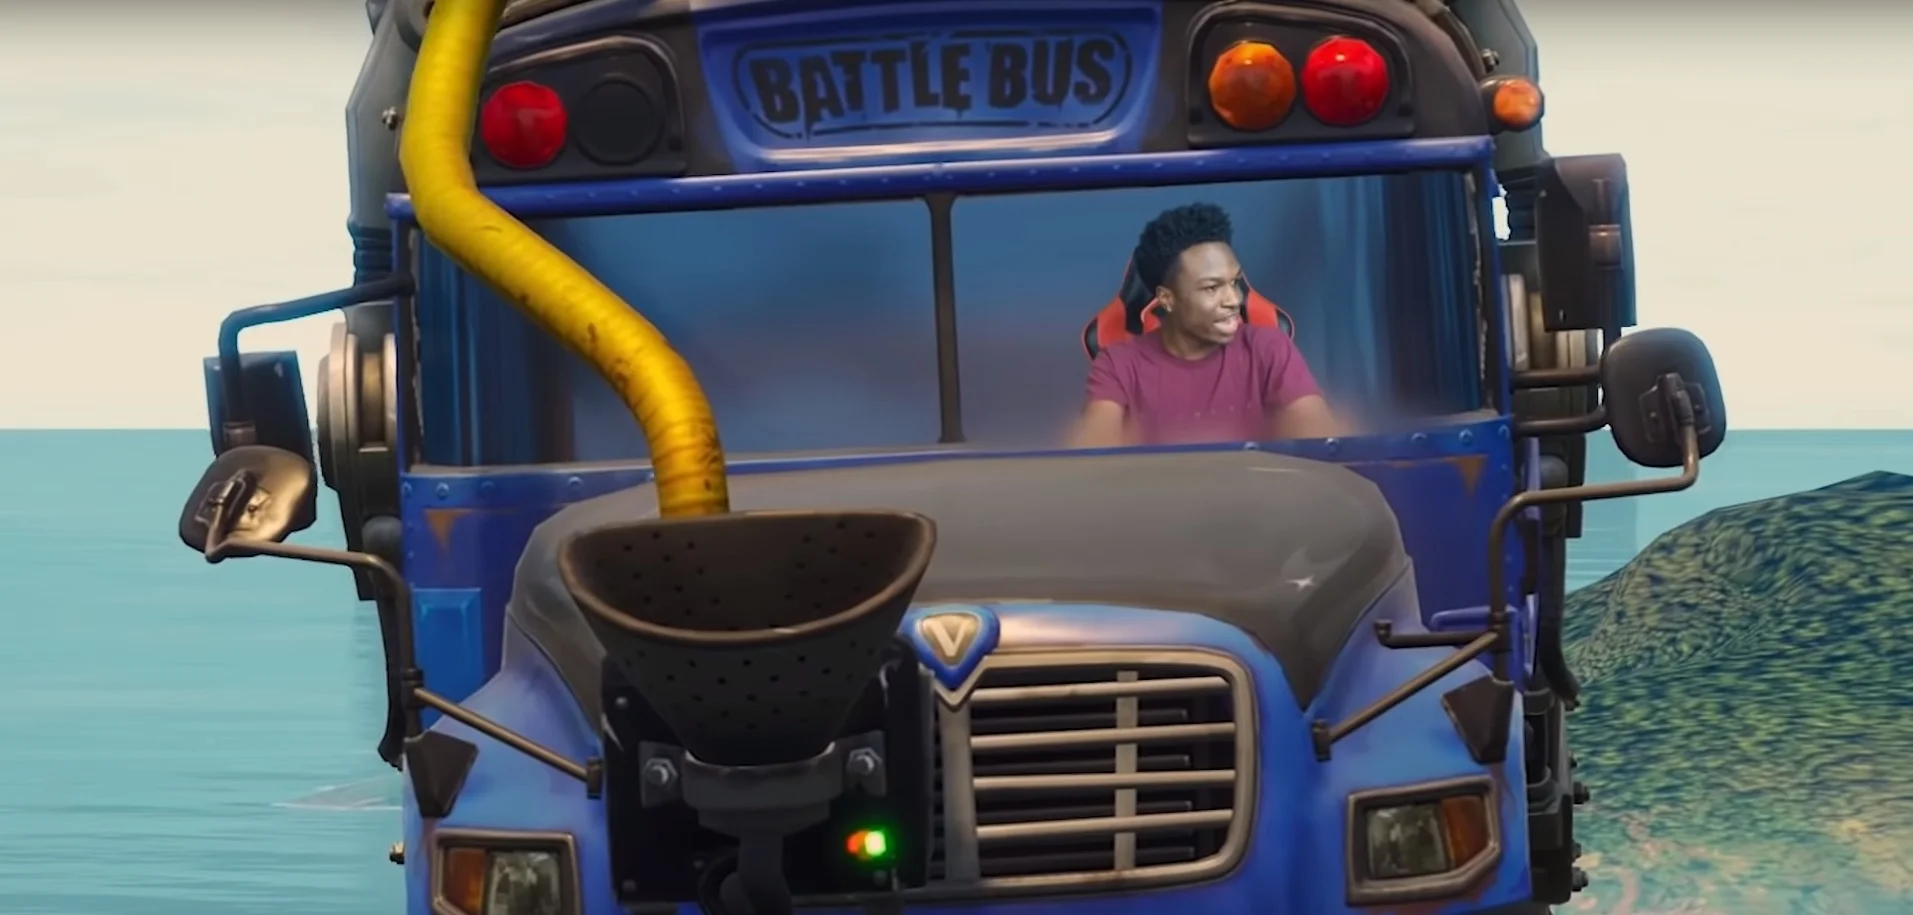 Смешное видео о тяжелых буднях водителя автобуса из Fortnite - фото 1